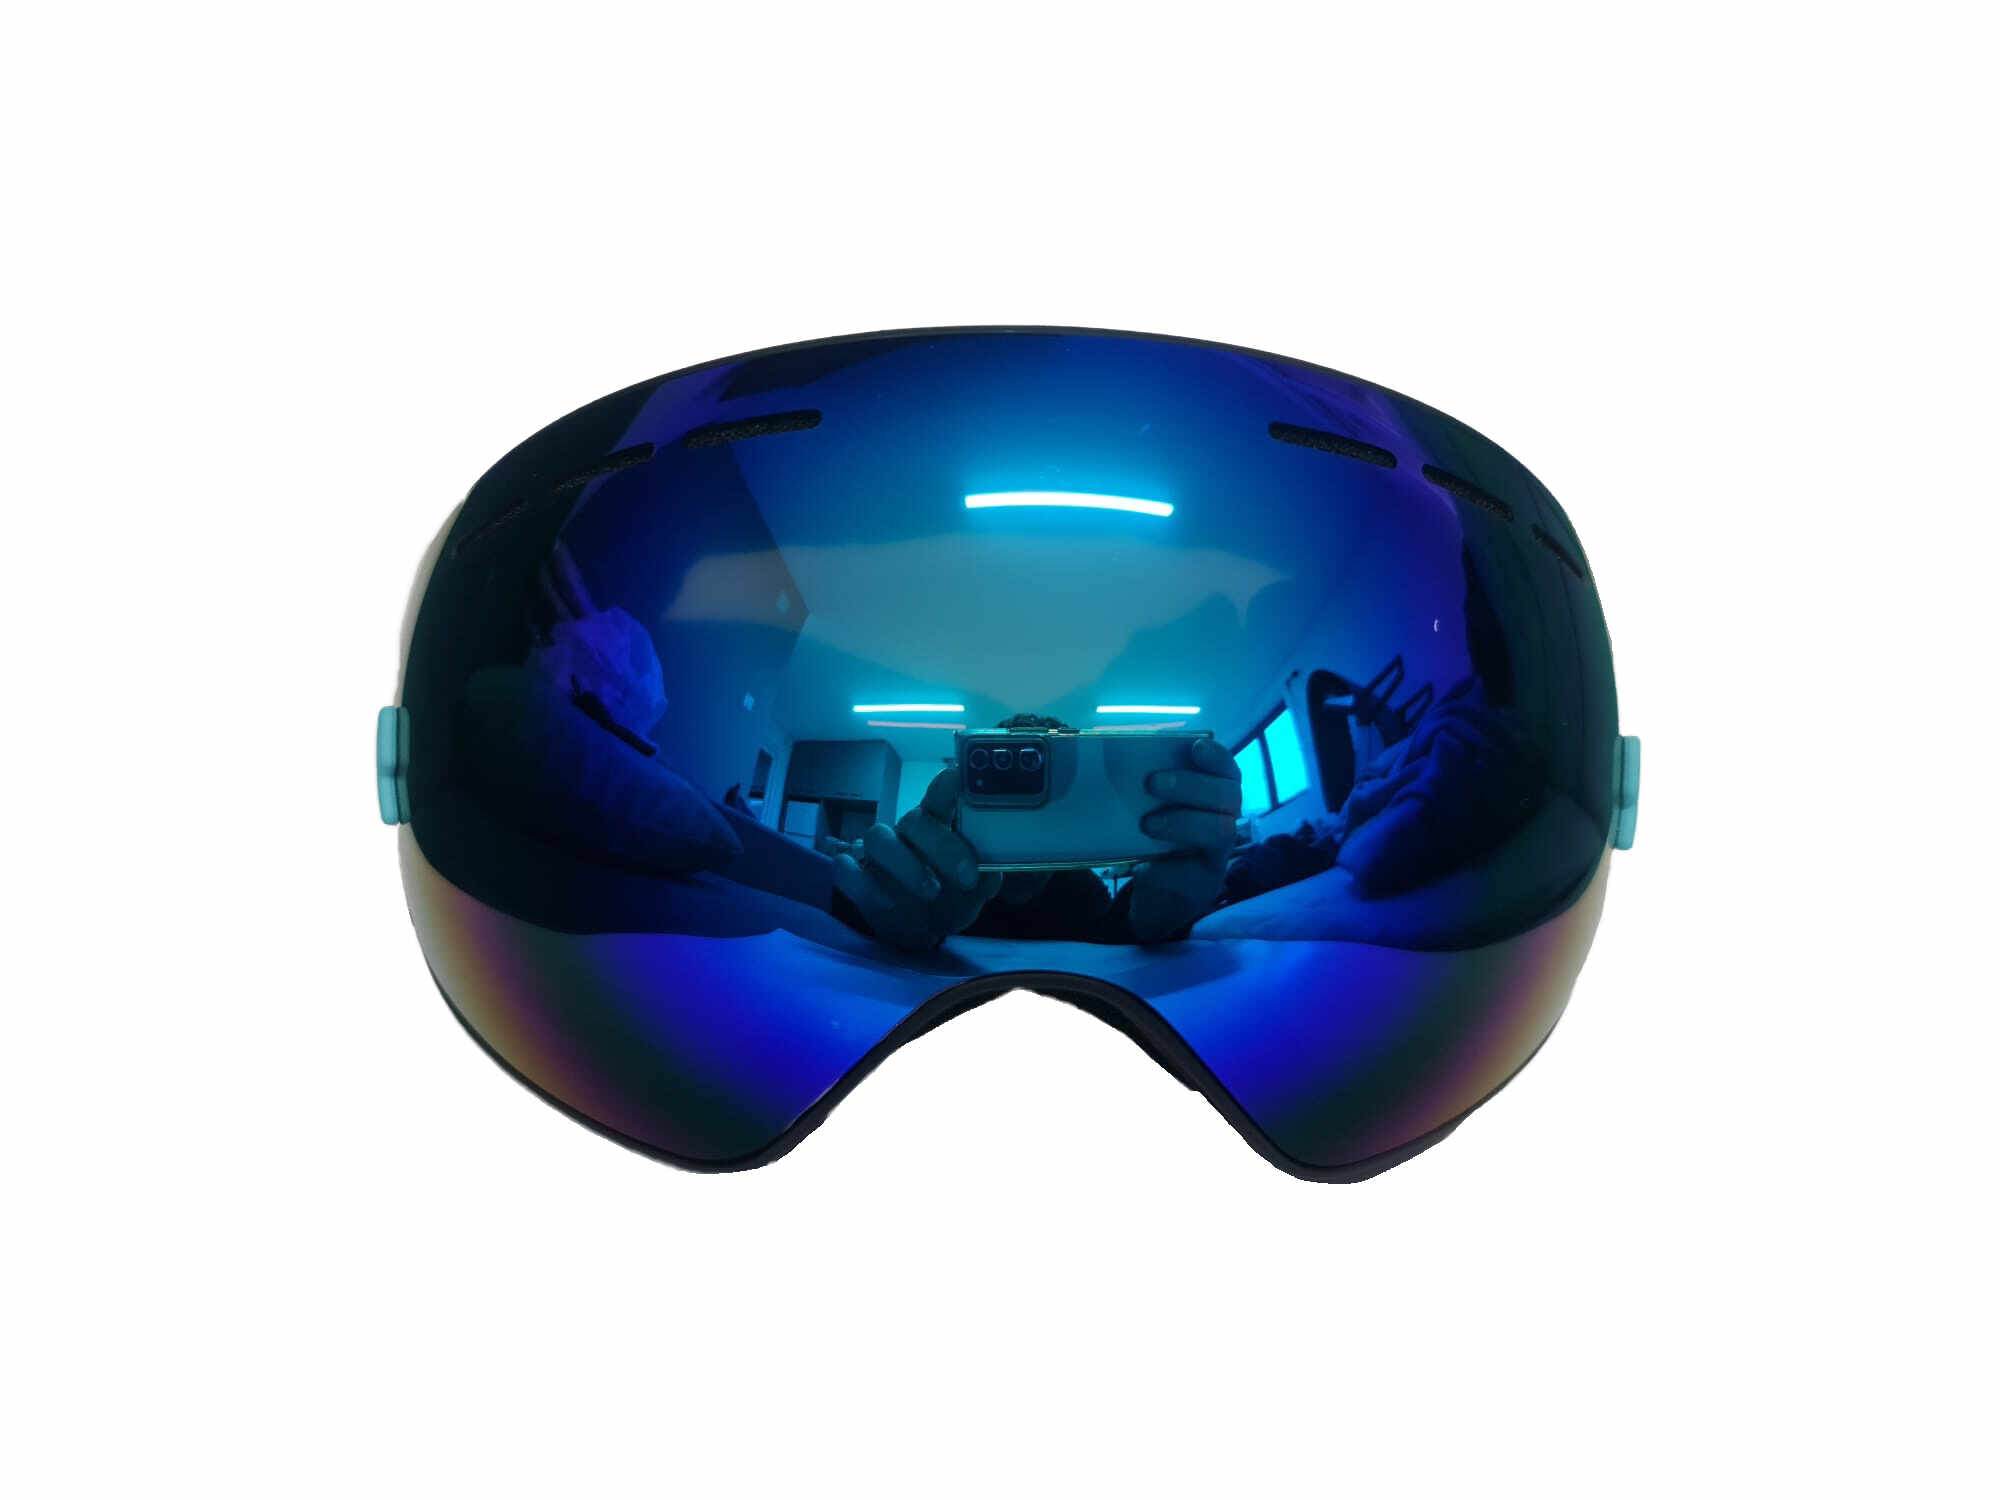 Ochelari ski si snowboard, lentila sferica dubla, demontabila, ventilate anti-ceata, oglinda, albastru